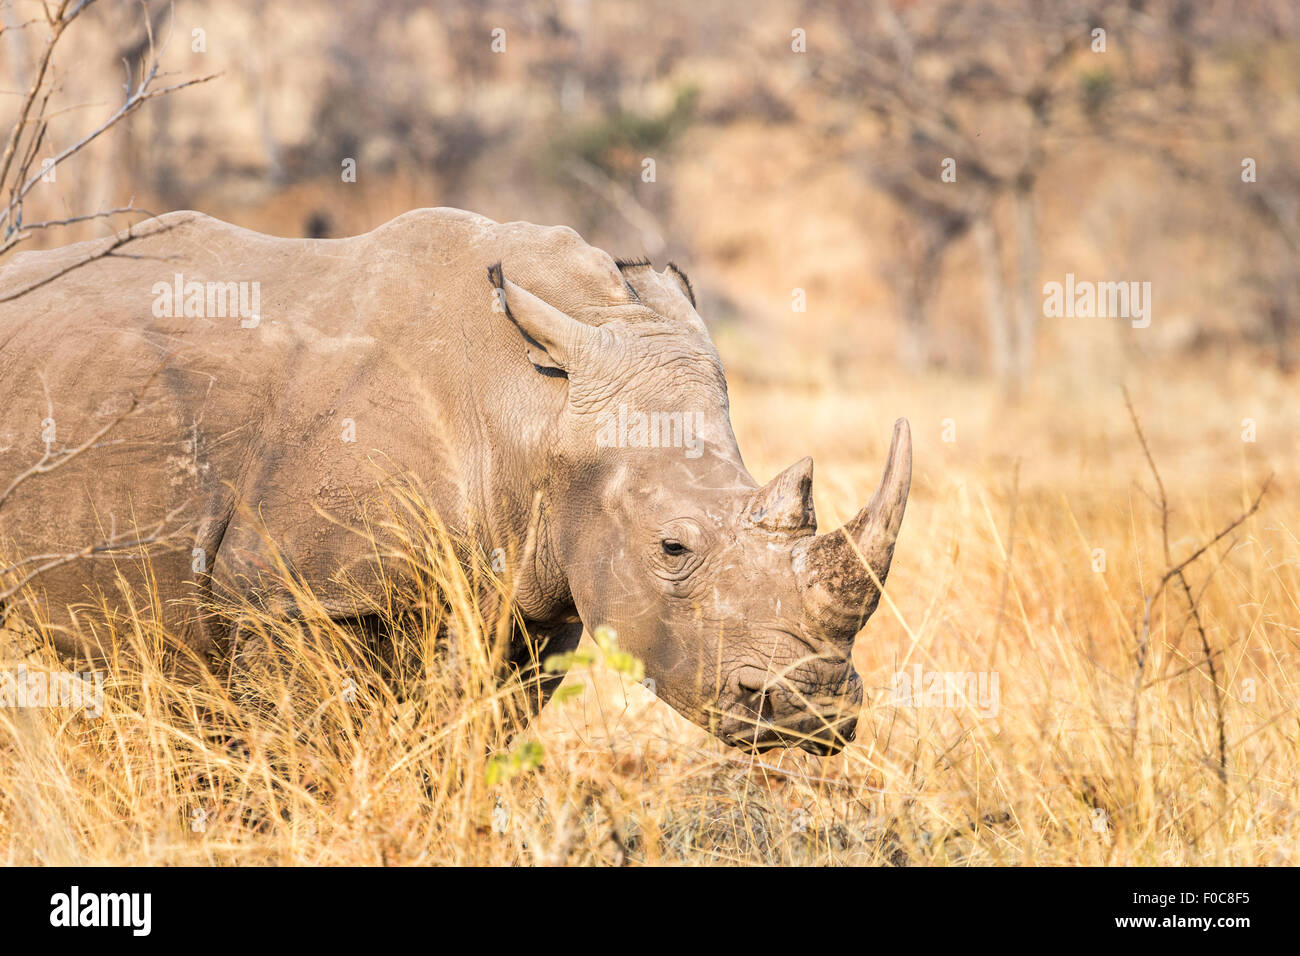 Conservation : Close-up de tête de rhinocéros blanc en voie de disparition, Ceratotherium simum, dans le Parc National de Mosi-oa-Tunya, Livingstone, Zambie Banque D'Images